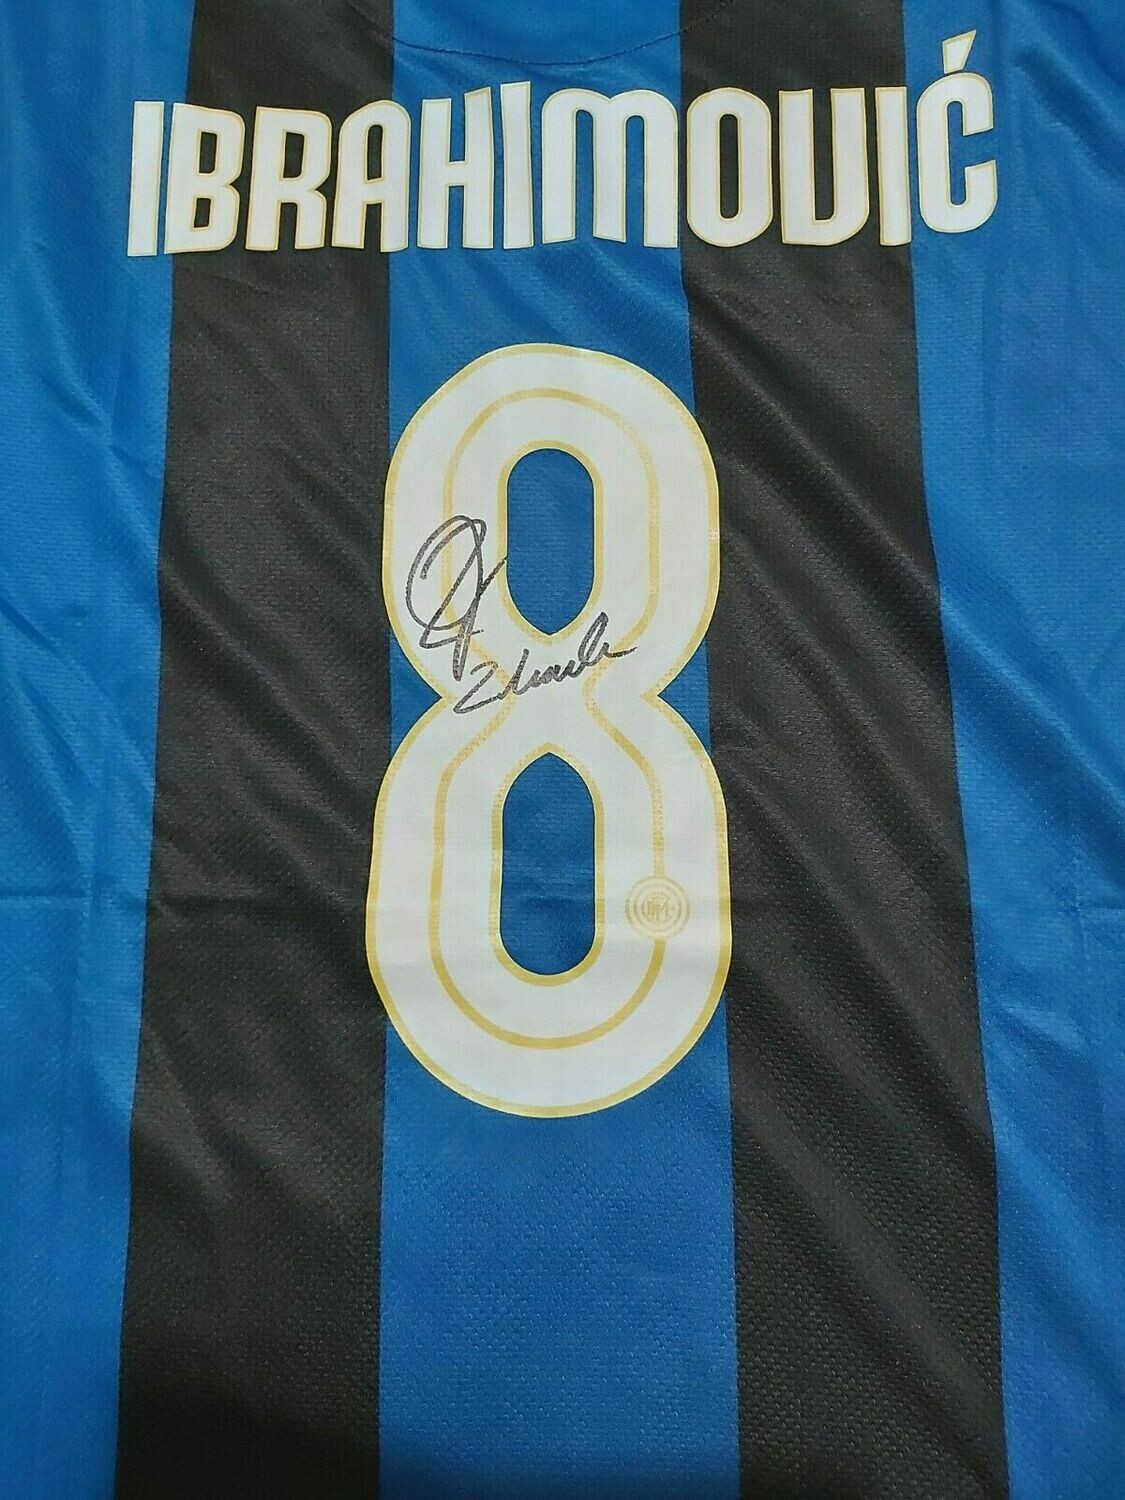 INTER Autografata da IBRAHIMOVIC 8  con certificato di autenticita' Signed From Ibrahimovic 8  with certificate coa of authetincitiy